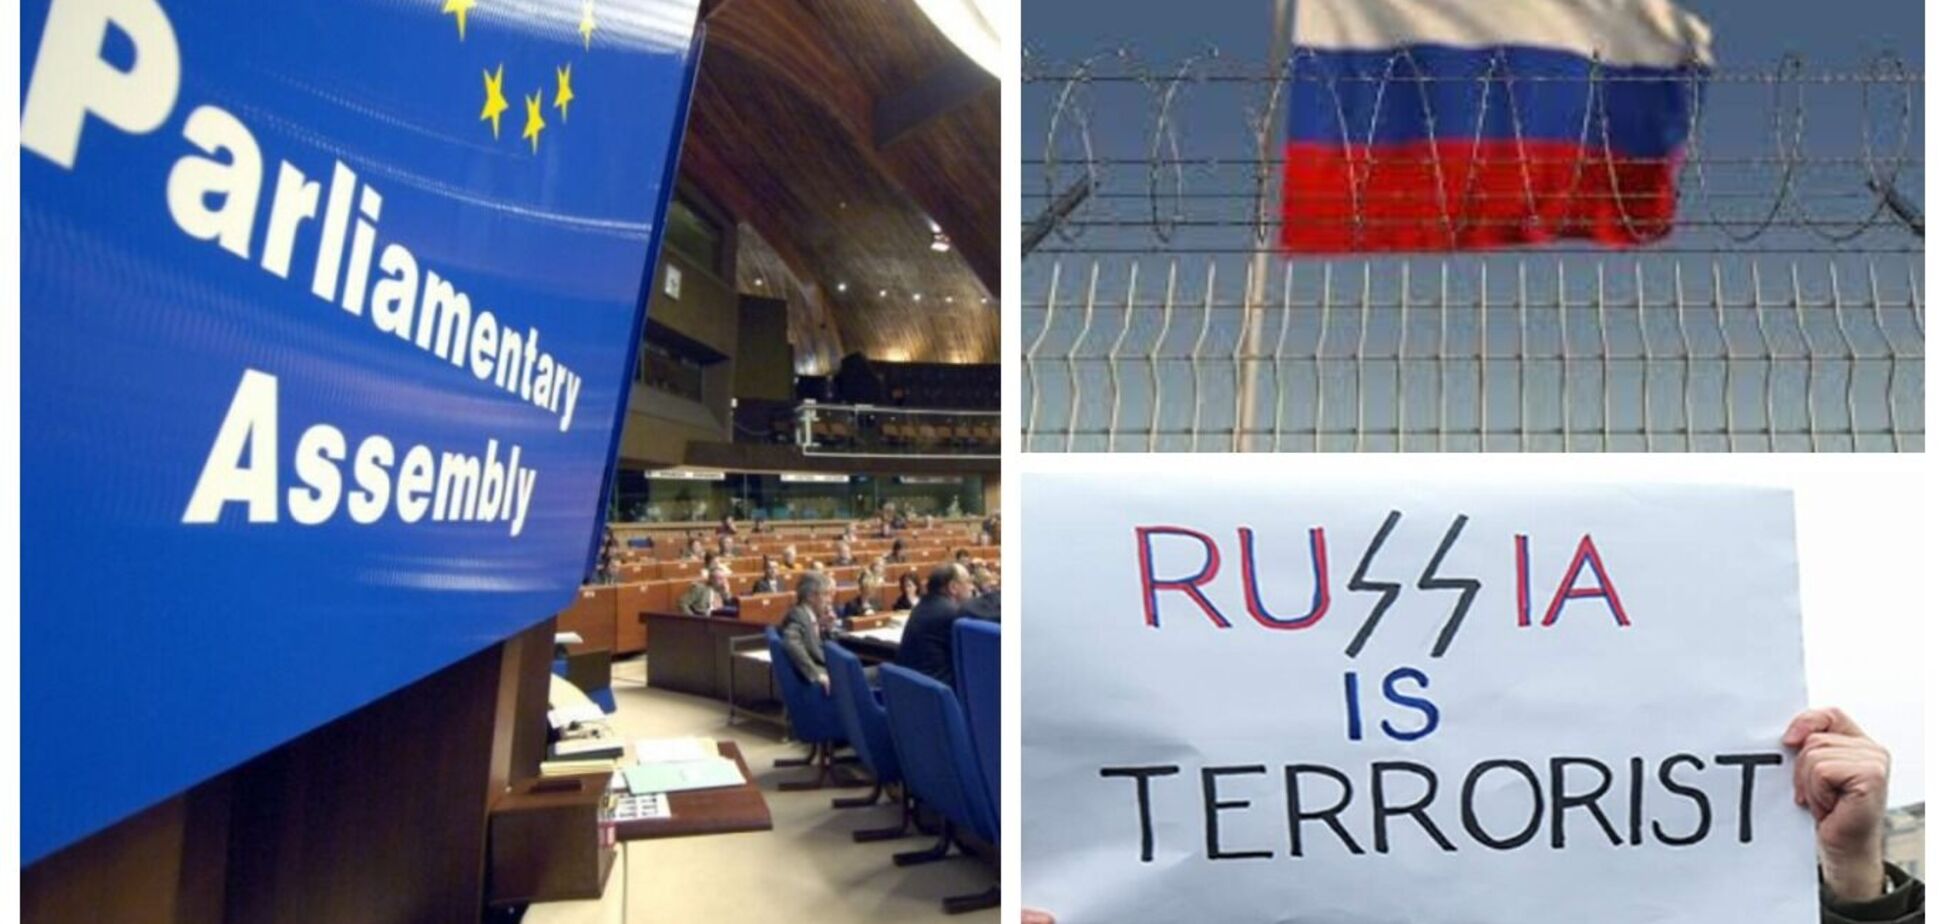 ПАРЄ ухвалила резолюцію щодо України, яка визнає російський режим терористичним і передбачає створення трибуналу